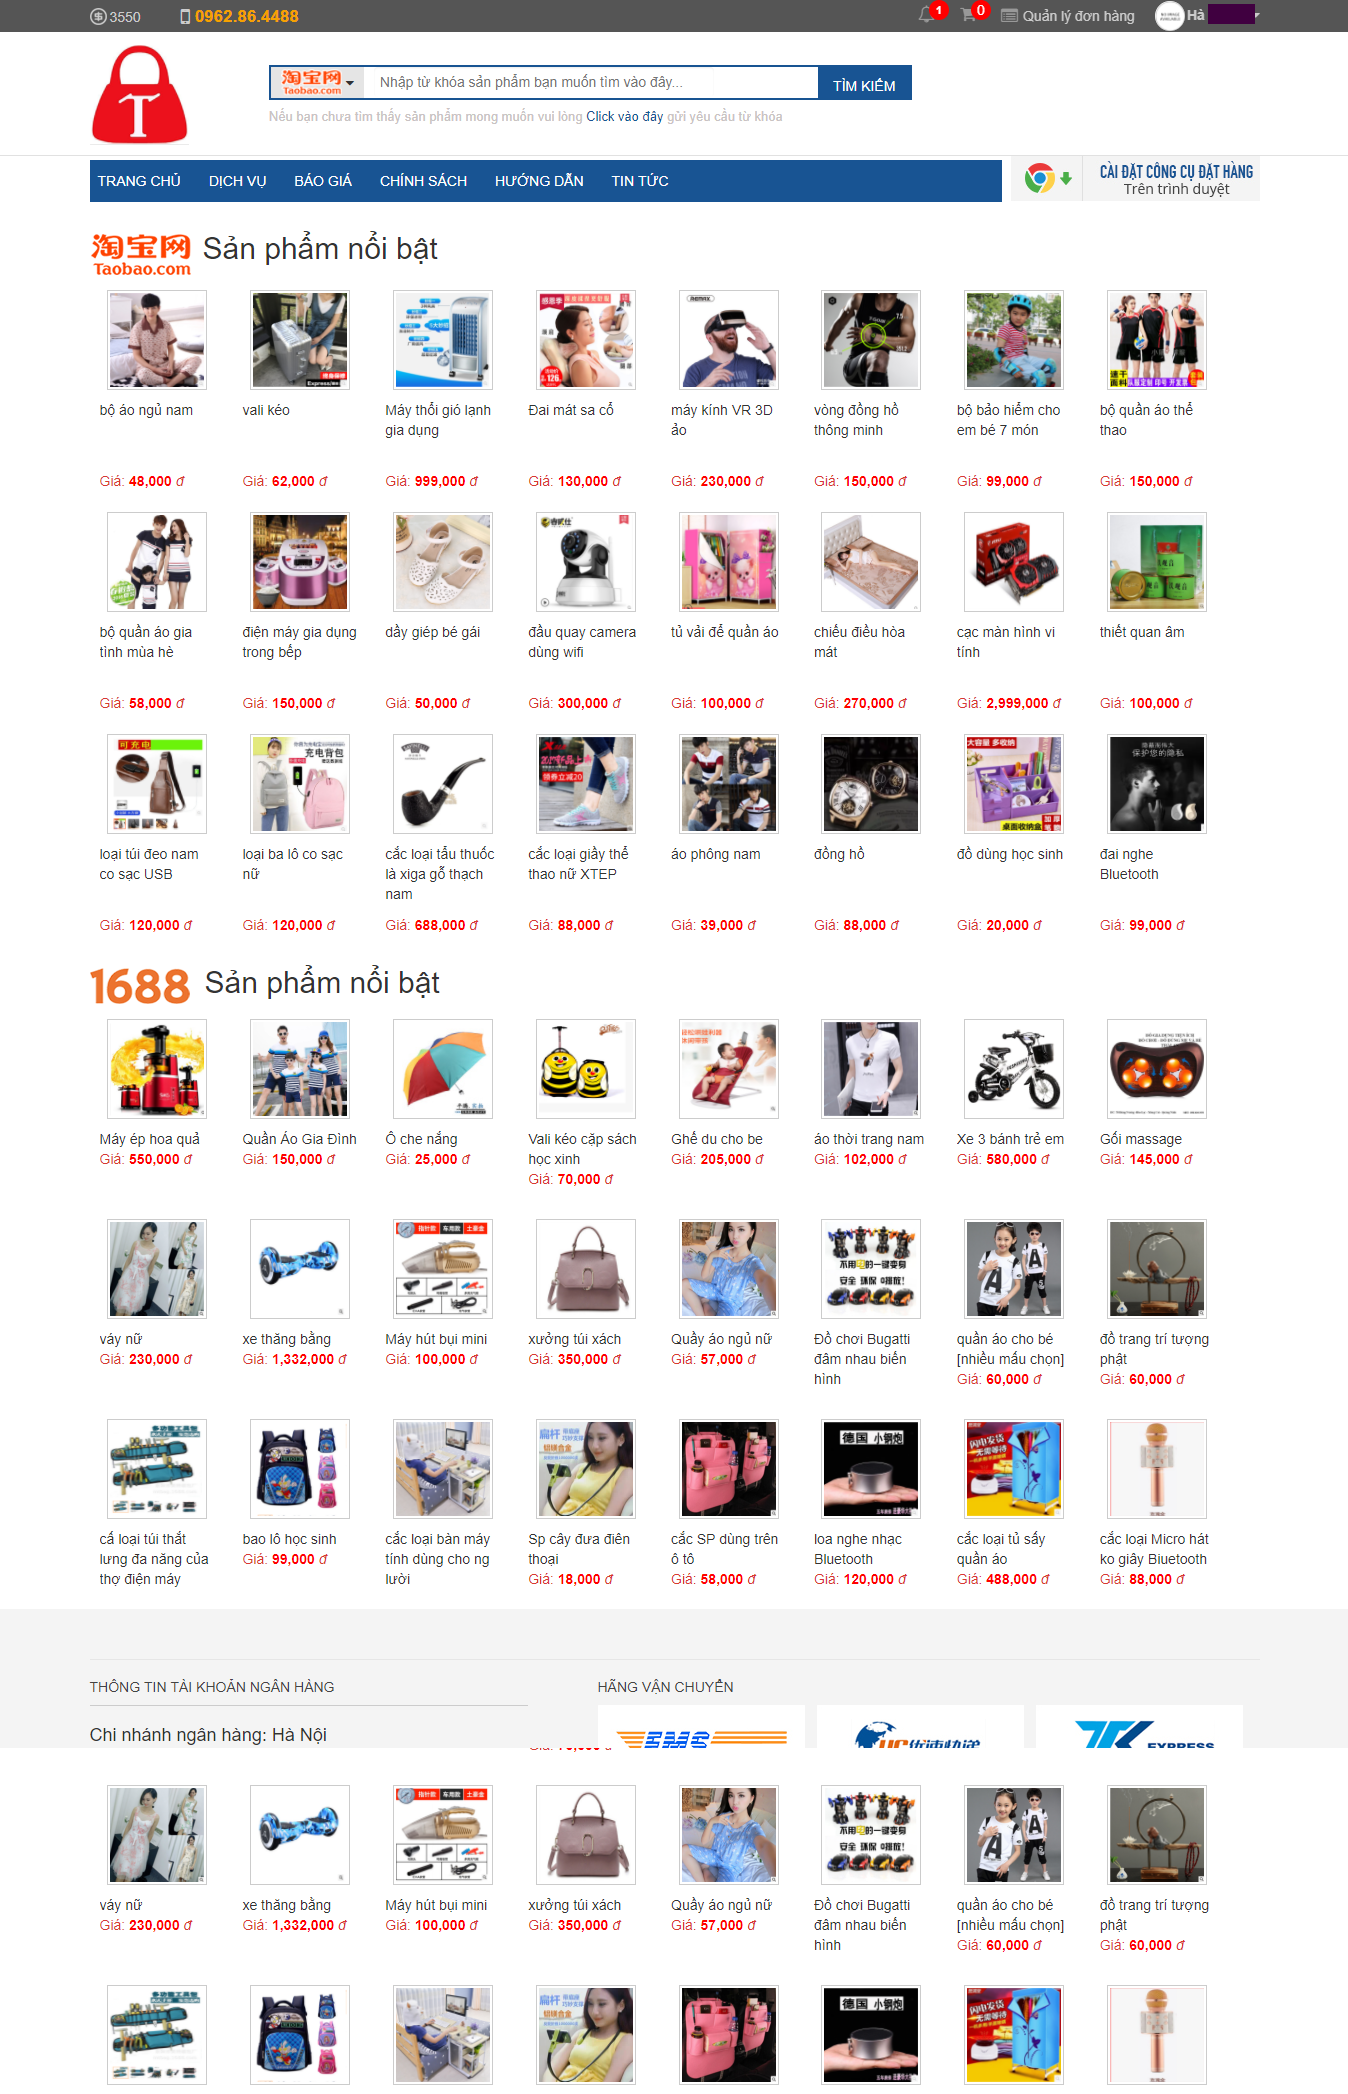 Thiết kế web đặt hàng Trung Quốc - Tinphongorder.vn